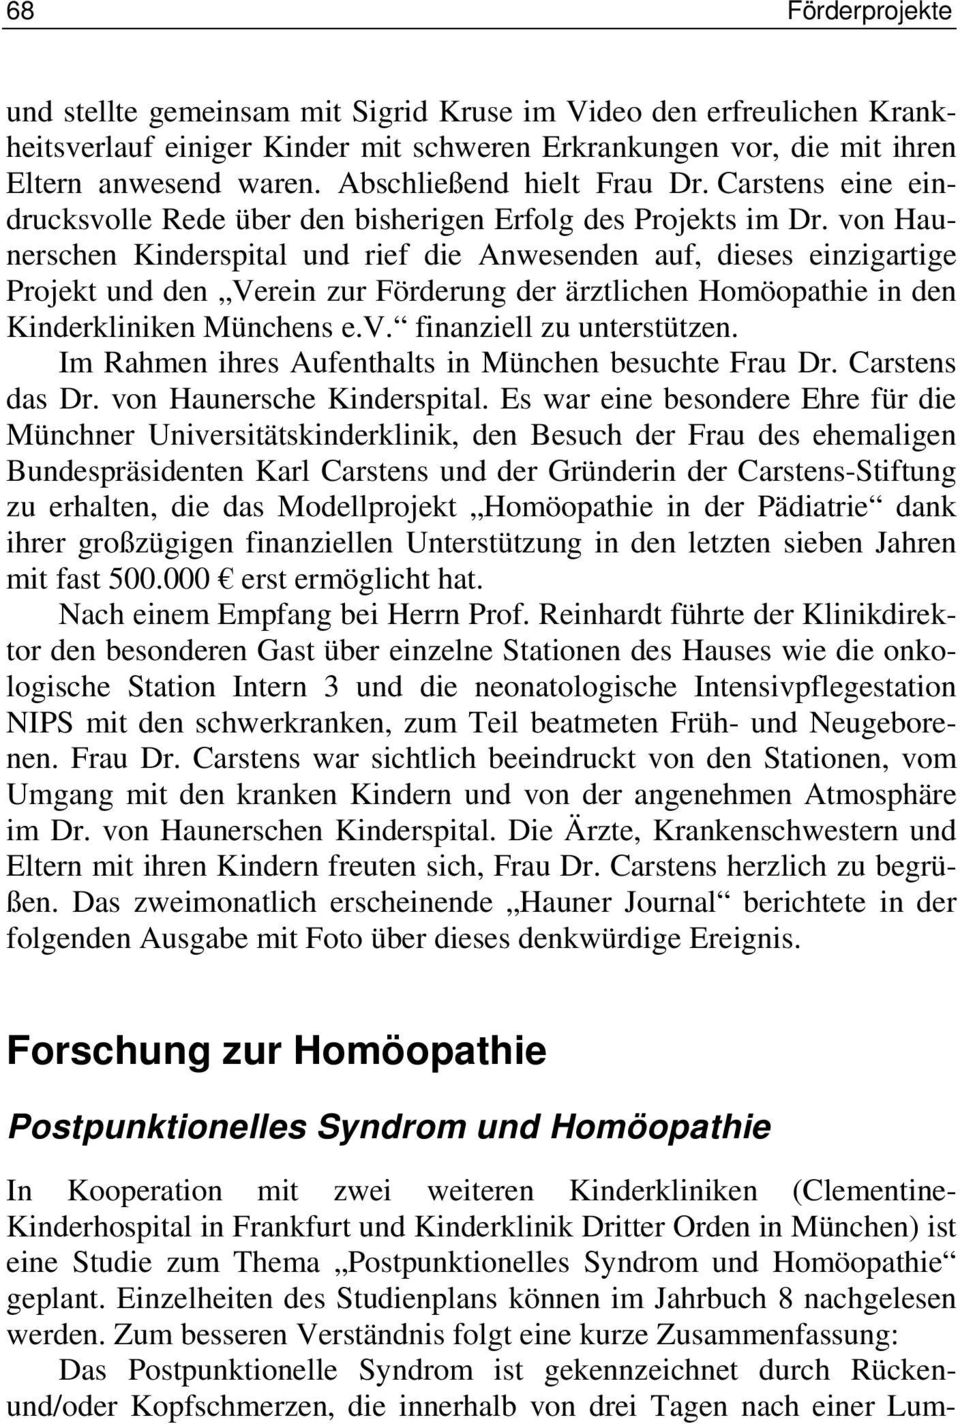 von Haunerschen Kinderspital und rief die Anwesenden auf, dieses einzigartige Projekt und den Verein zur Förderung der ärztlichen Homöopathie in den Kinderkliniken Münchens e.v. finanziell zu unterstützen.